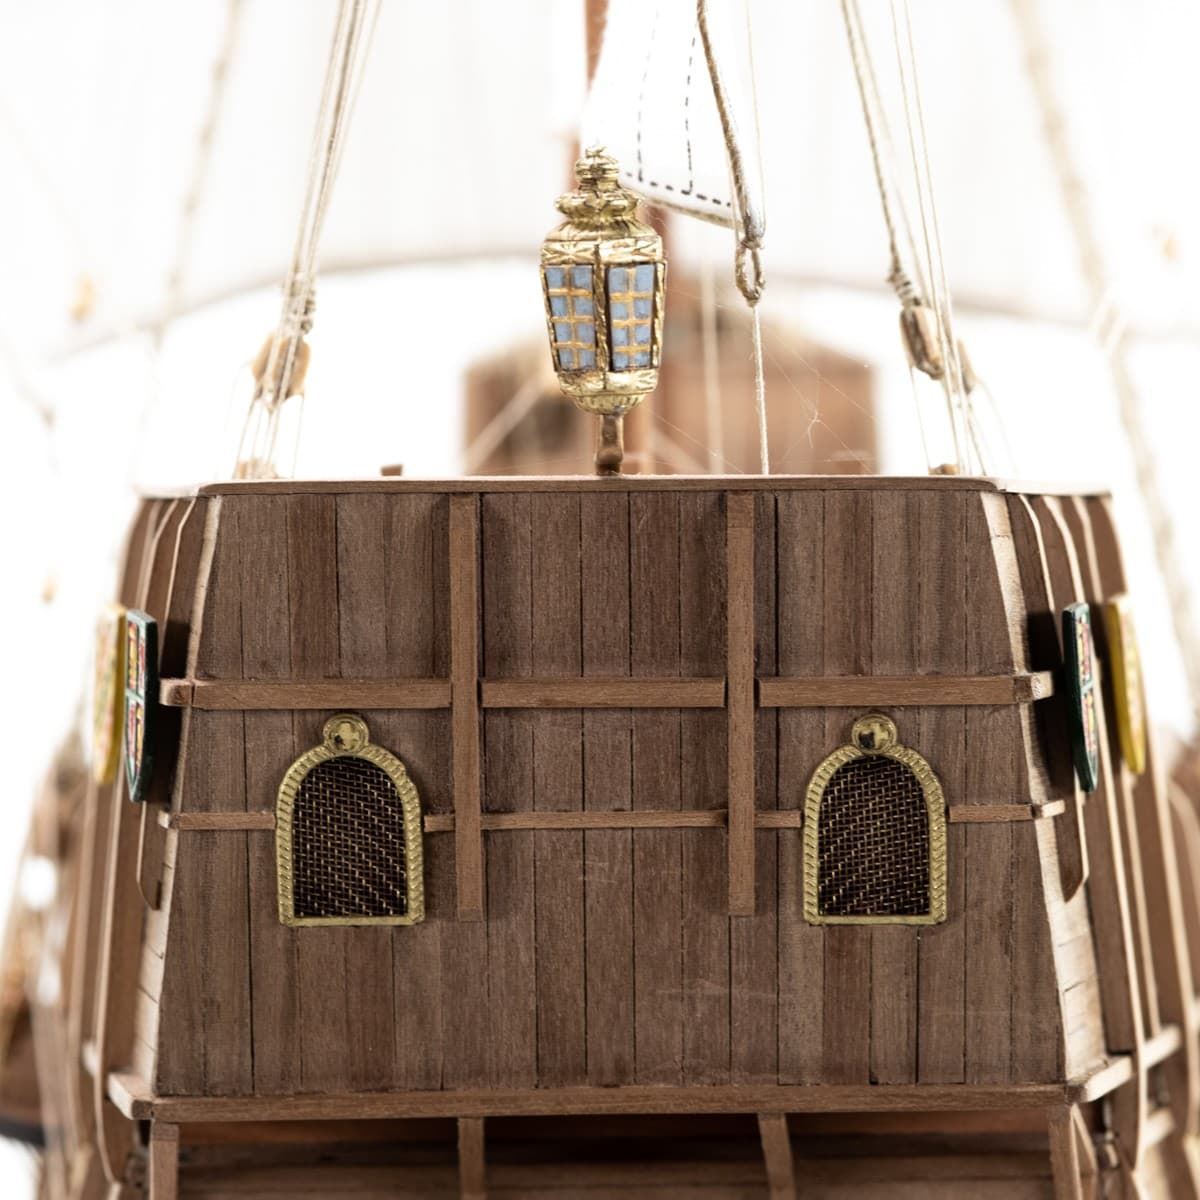 Maqueta barco madera: Carabela Santa María - Imagen 11